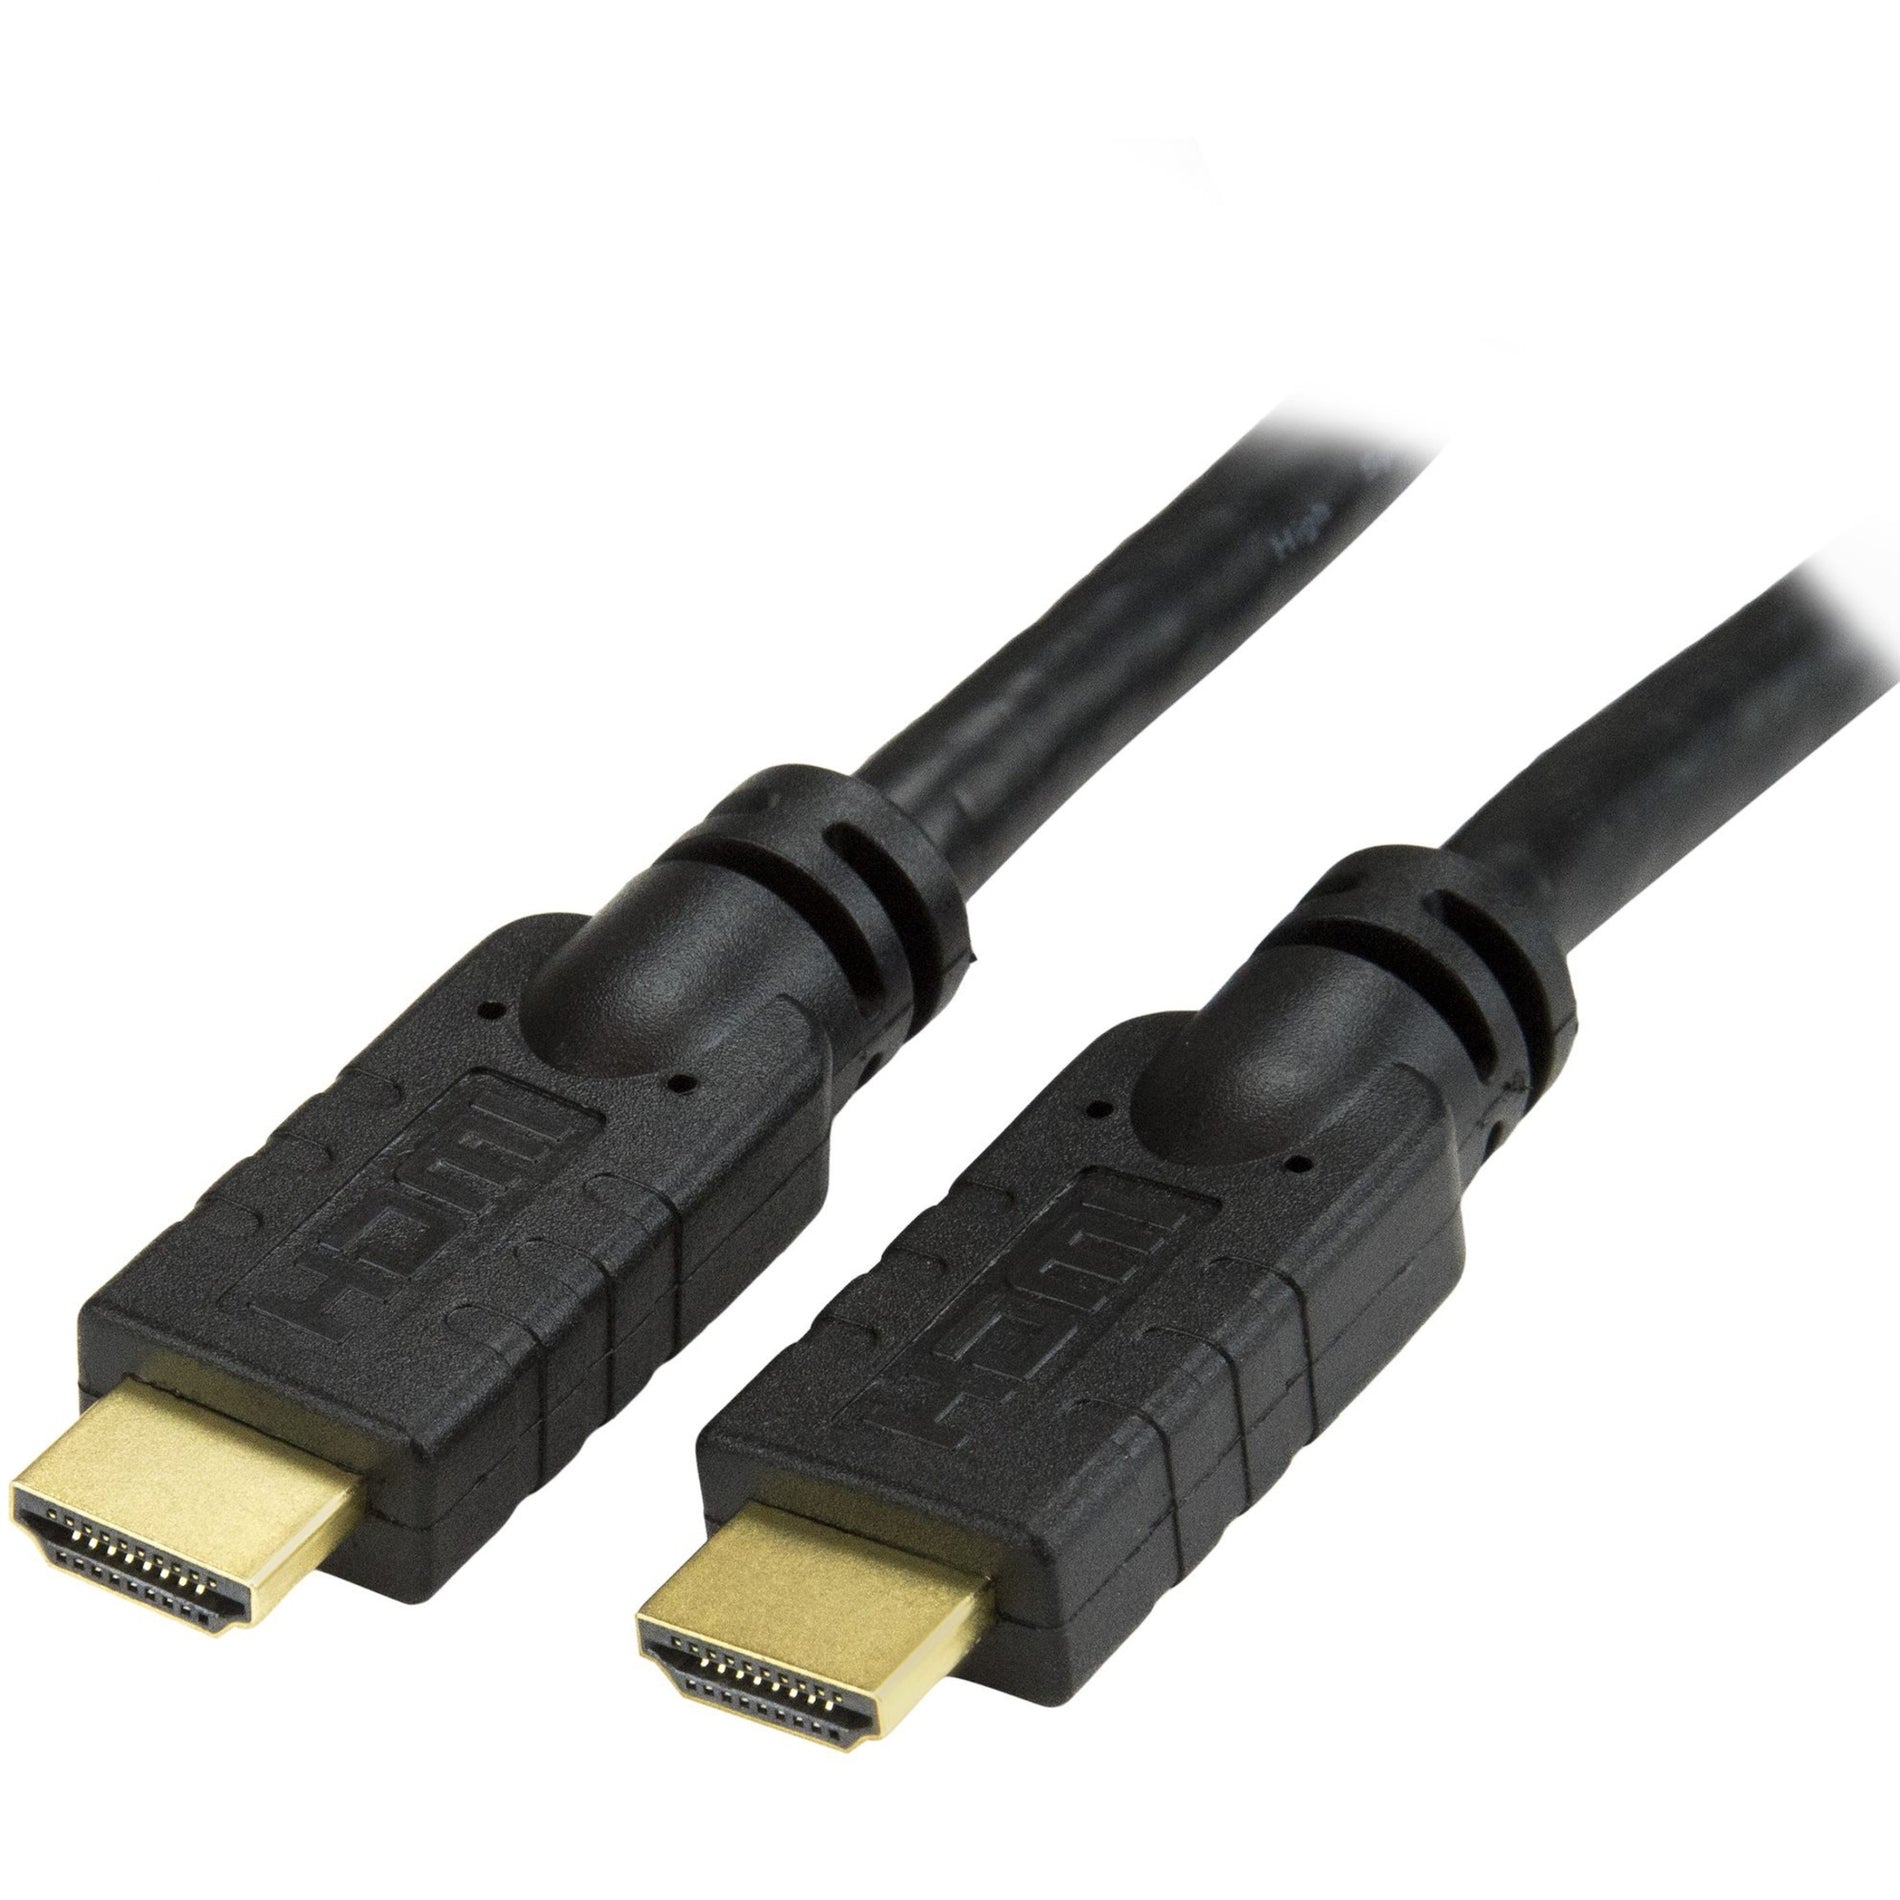 StarTech.com Cable de audio/video HDMI HDMIMM20HS con Ethernet cable HDMI de alta velocidad de 20 pies con Ultra HD 4k x 2k resistente a la corrosión conectores chapados en oro. Marca: StarTech.com.